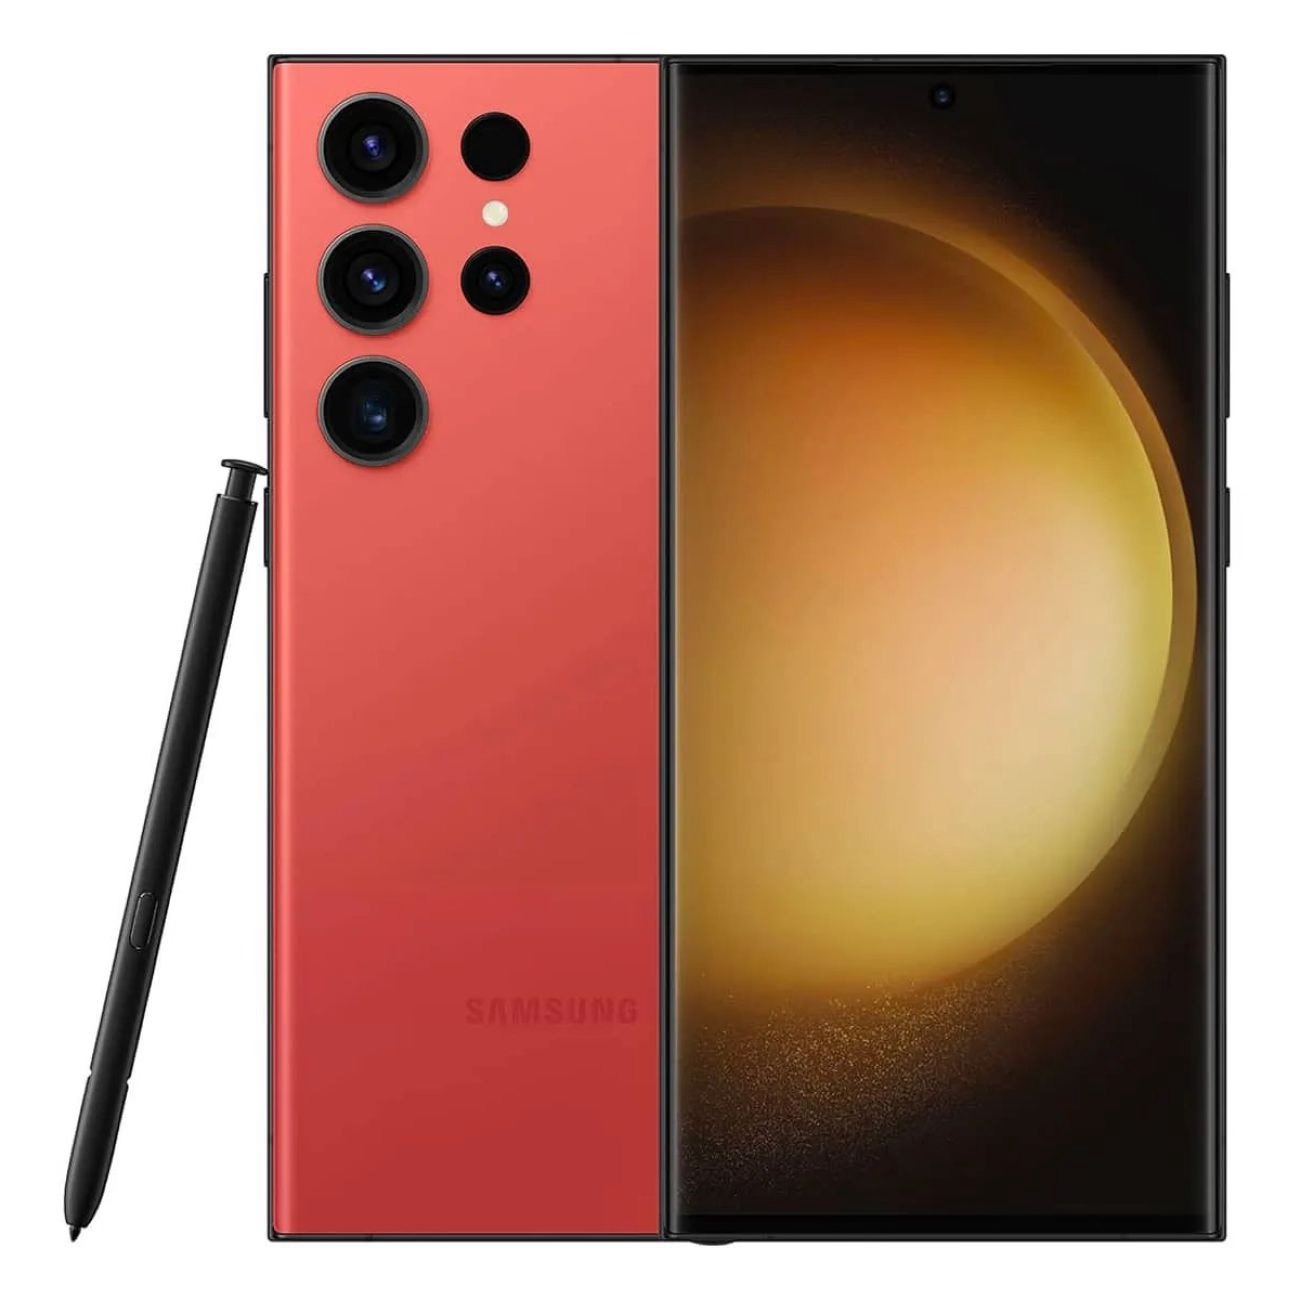 Купить смартфон samsung galaxy s23 ultra 12/256gb red S-Серия в официальном магазине Apple, Samsung, Xiaomi. iPixel.ru Купить, заказ, кредит, рассрочка, отзывы,  характеристики, цена,  фотографии, в подарок.